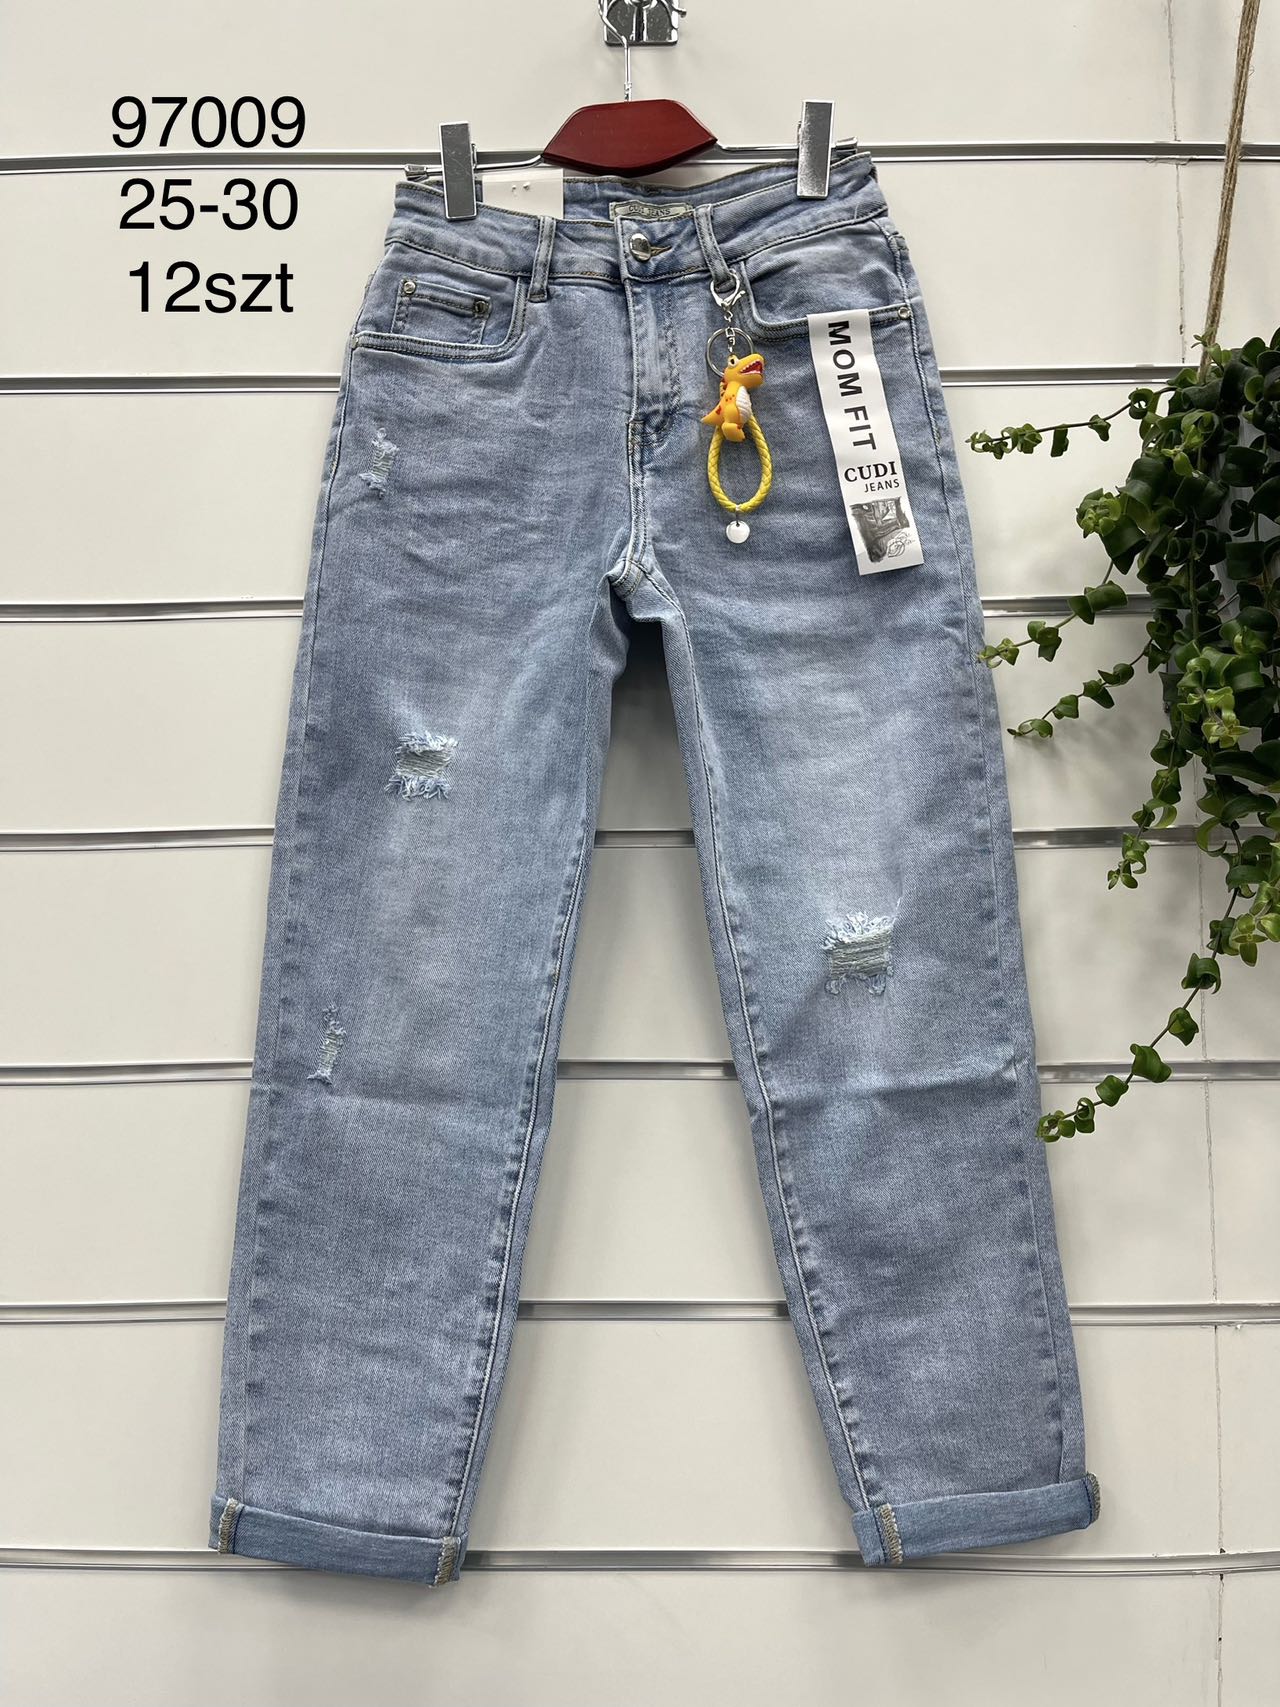 Spodnie damskie jeans Roz  25-30 .  1 kolor . Paczka 12szt